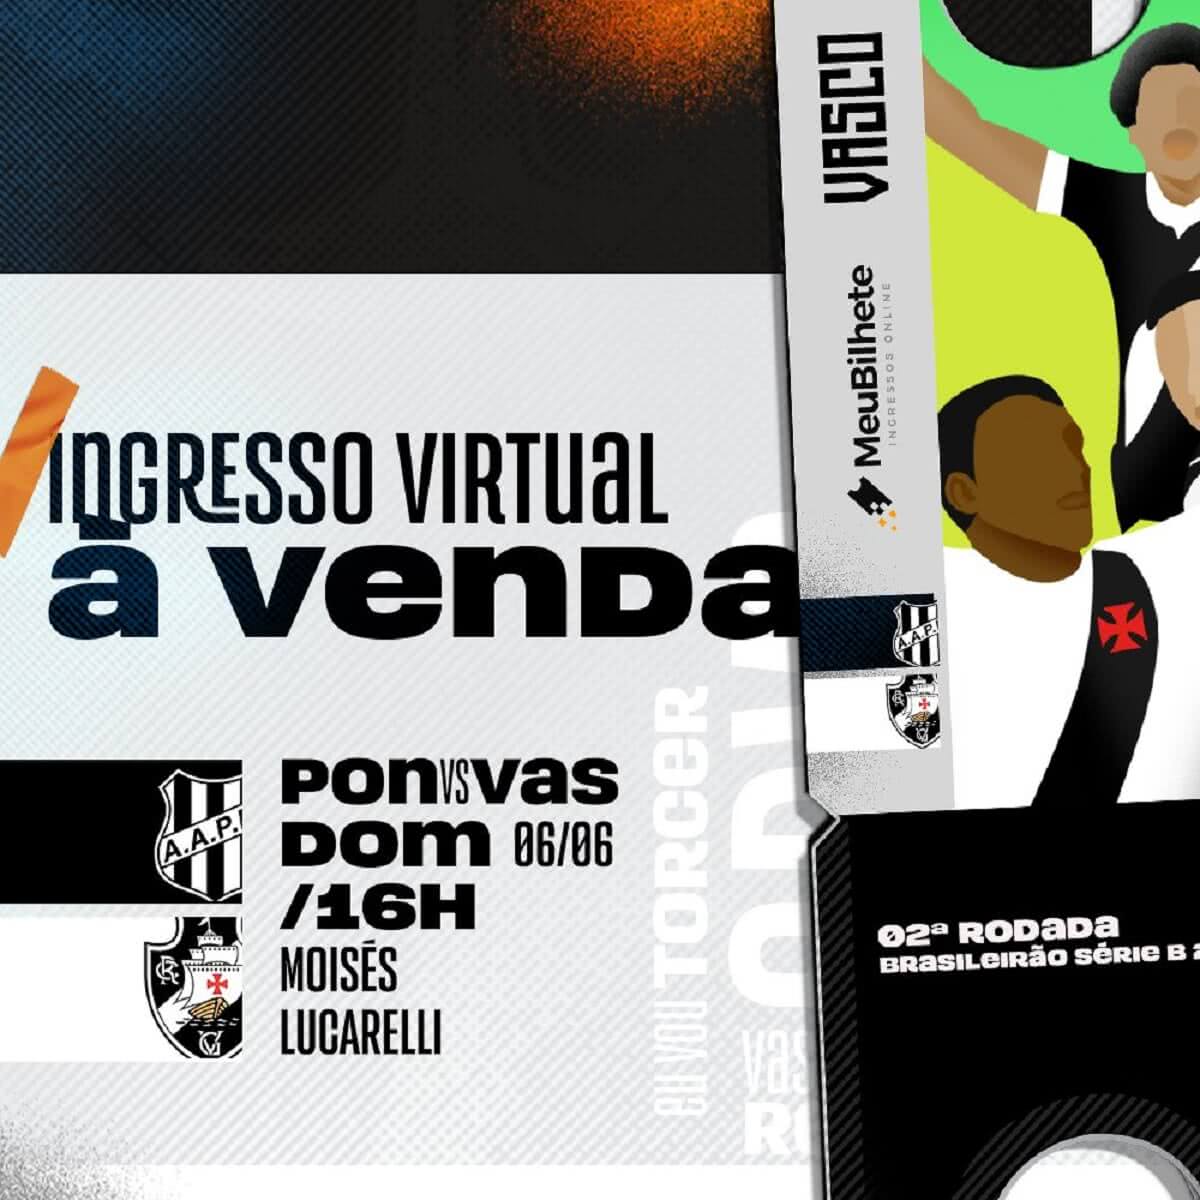 Vasco coloca à venda ingressos virtuais para o jogo contra a Ponte Preta